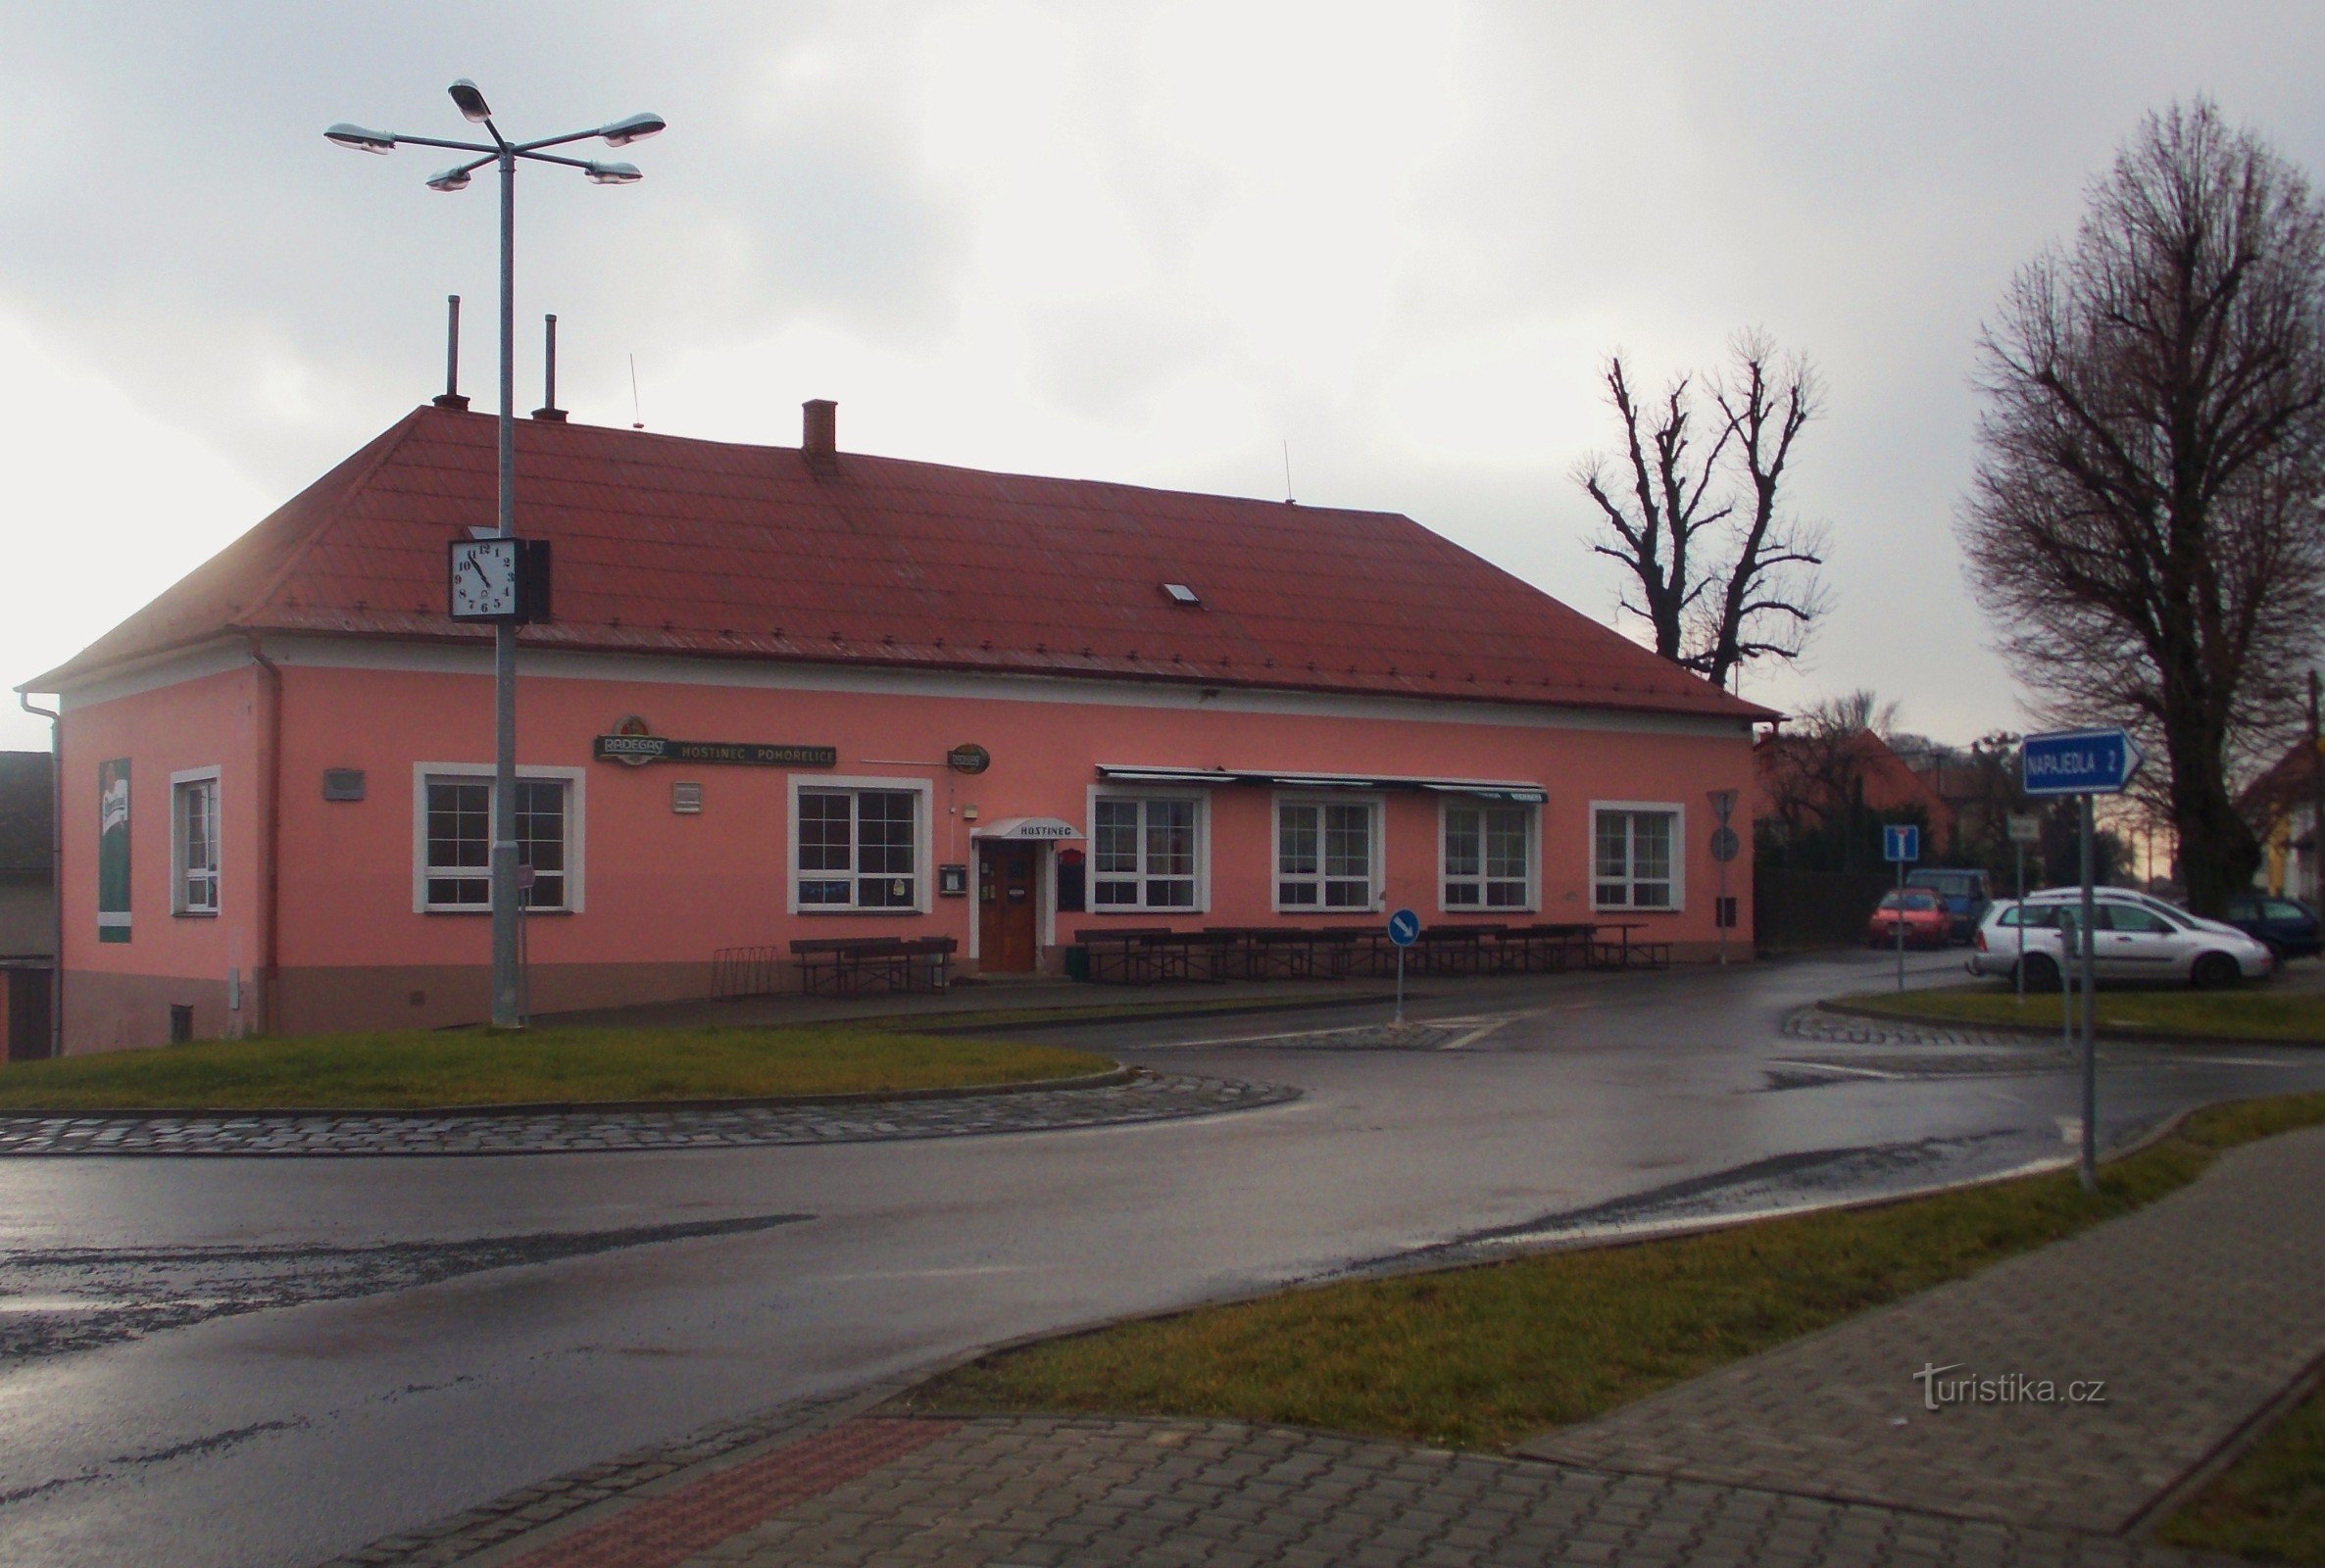 Inn in Pohořelice near Zlín